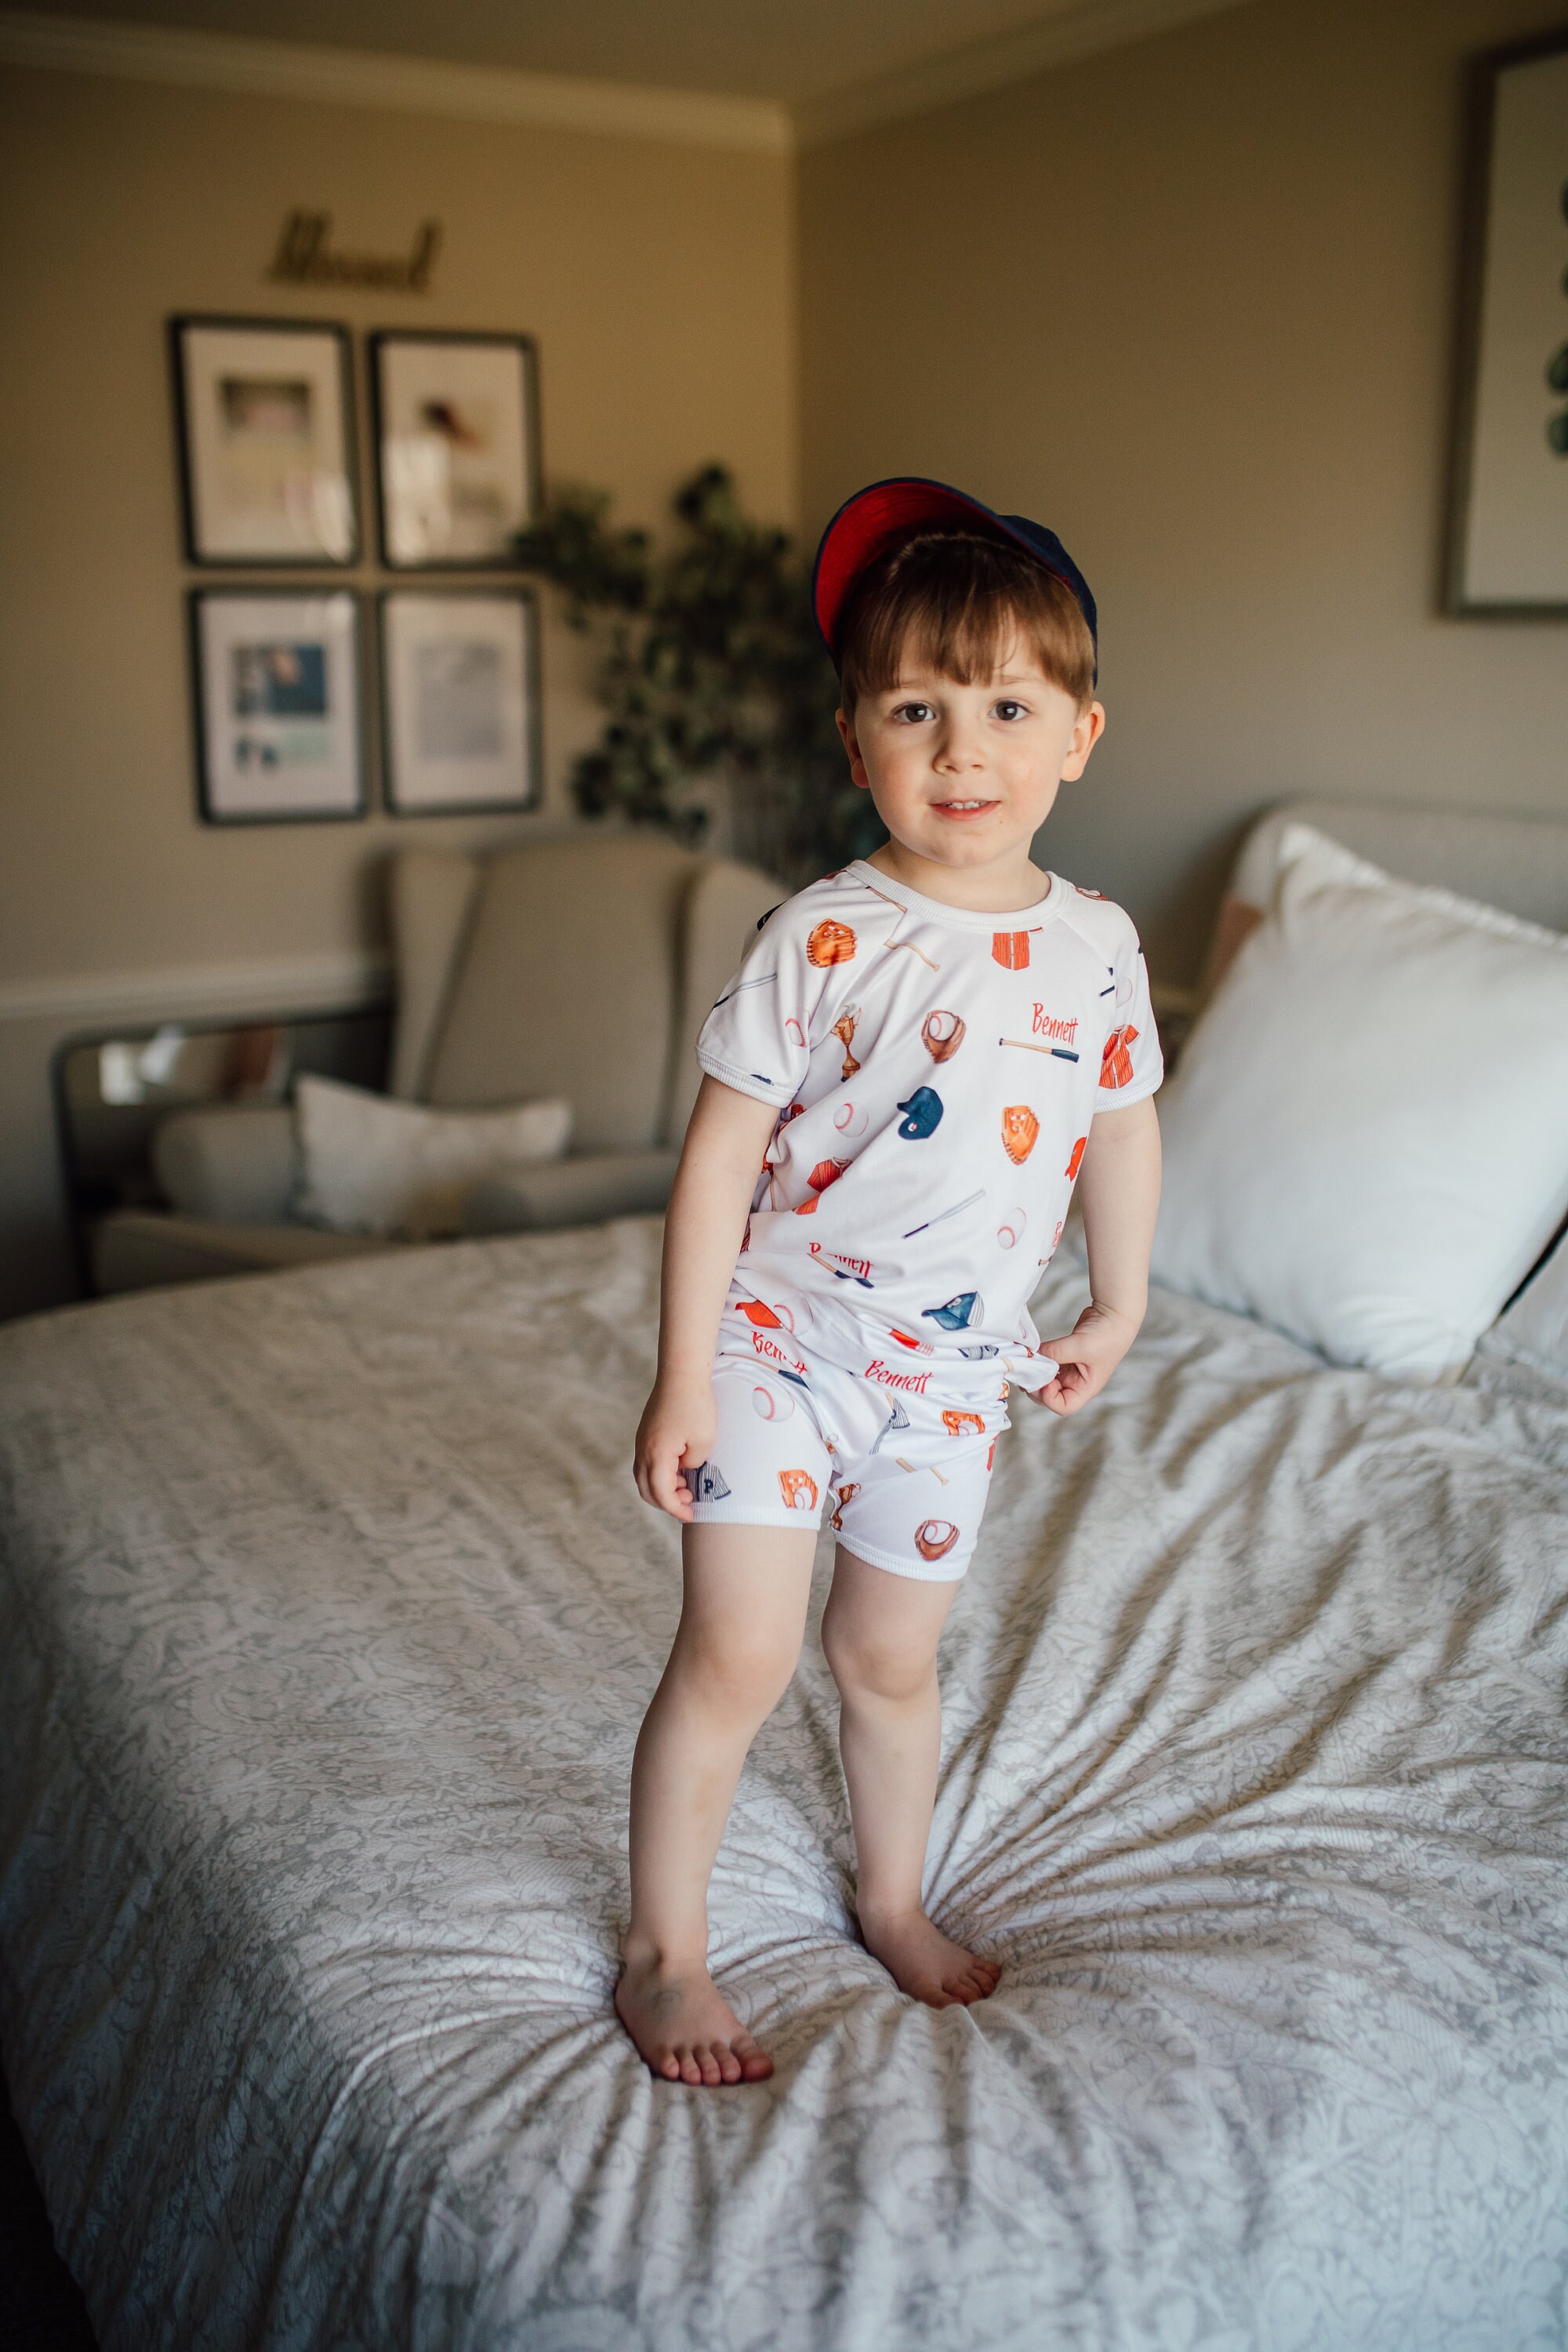 Kids pajamas Kleding Unisex kinderkleding Pyjamas & Badjassen Pyjama Pajamas with Name Baseball Print PJs Baseball Pajamas Birthday Gift Personalized PJs for Kids Boy Pajamas 